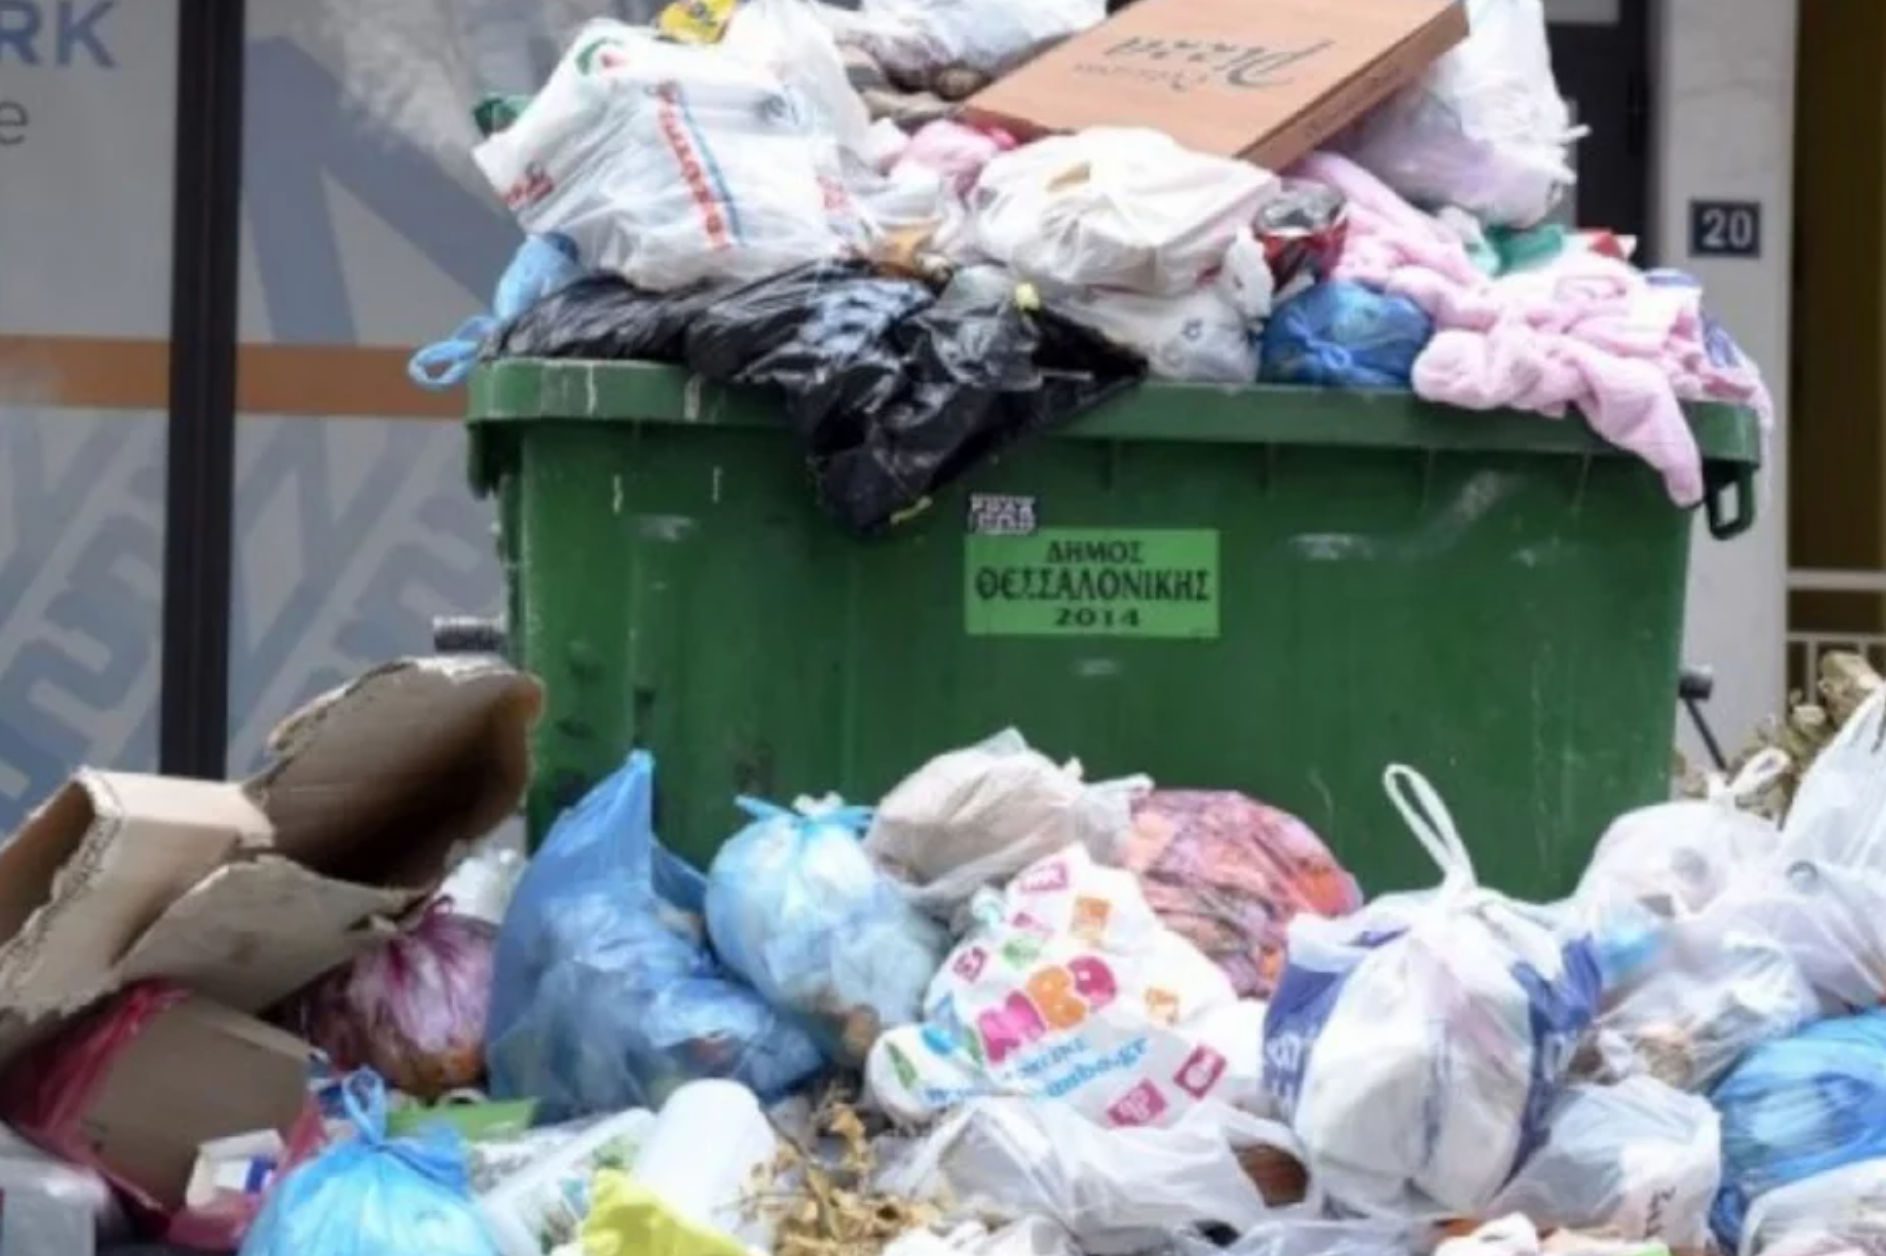 Τα σκουπίδια «κάνουν πάρτι» σε γνωστό δήμο της χώρας – Εισαγγελική έρευνα